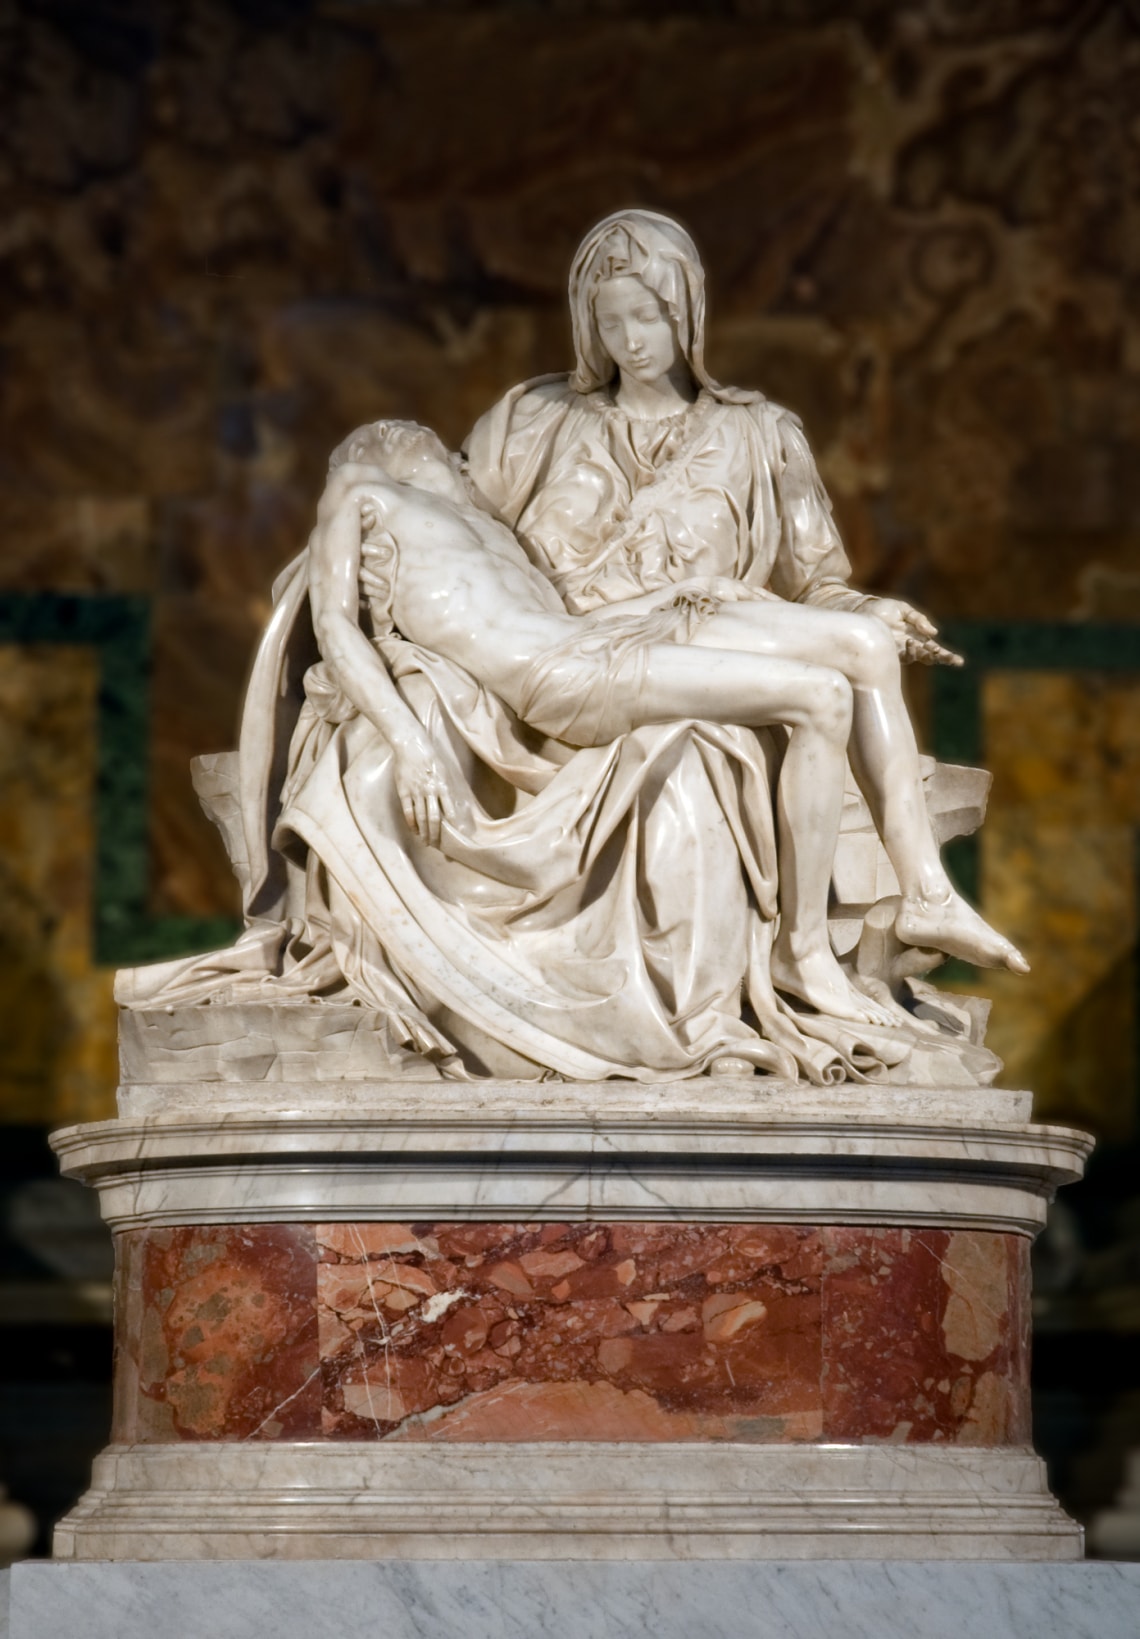 Pietà (magyarul a „Fájdalmas anya” címen is ismert)